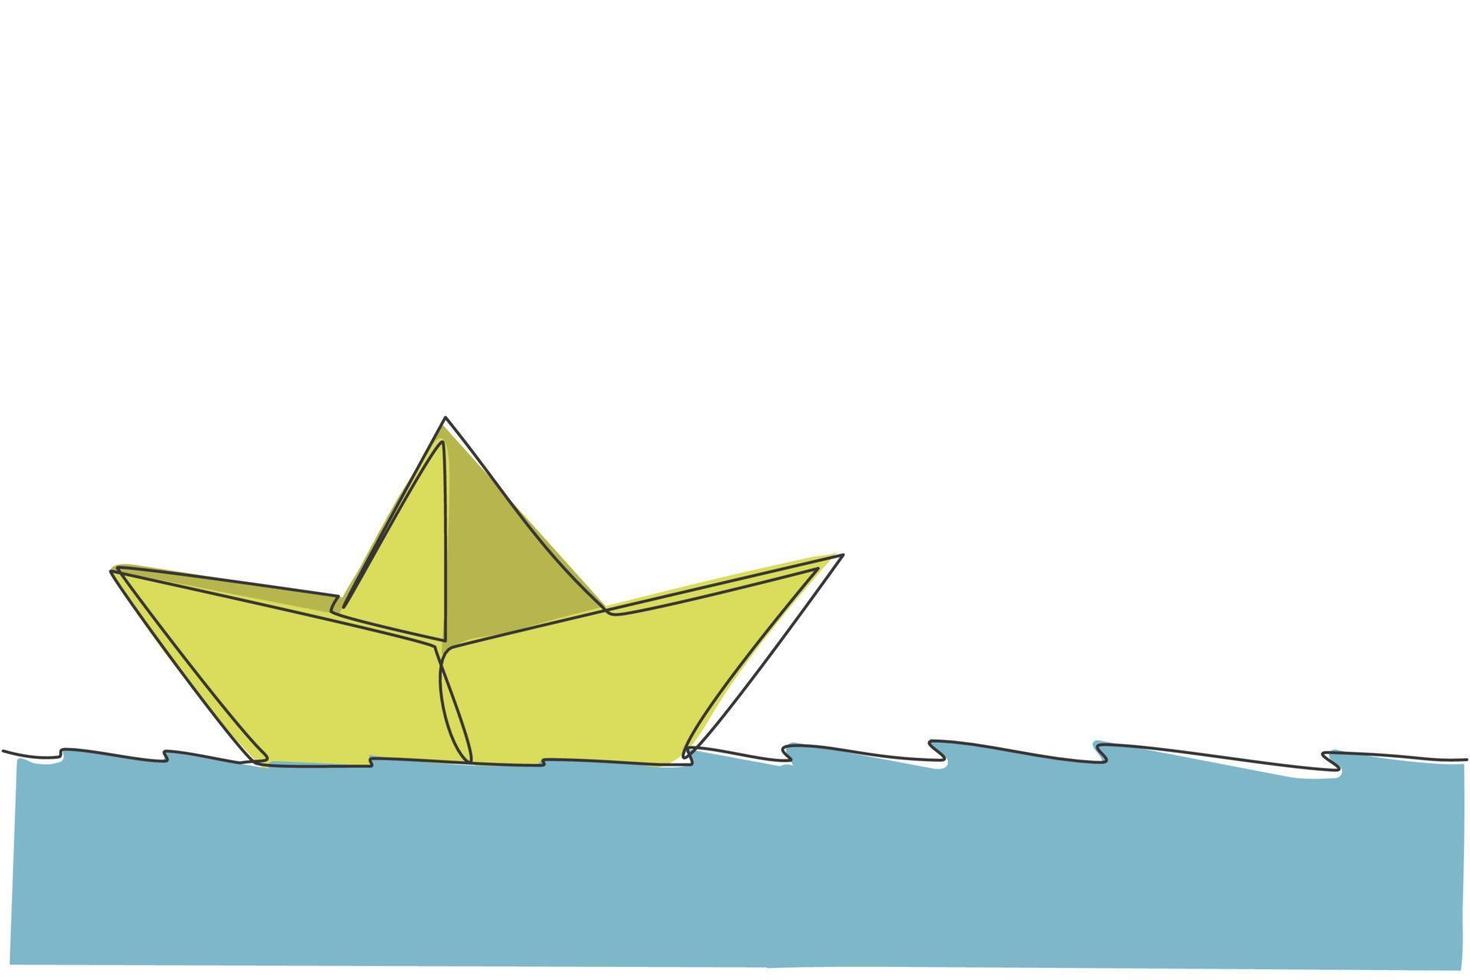 en kontinuerlig linjeteckning av pappersbåt som seglar på vattenfloden. origami hantverkskoncept. dynamisk enkel linje rita design vektor grafisk illustration